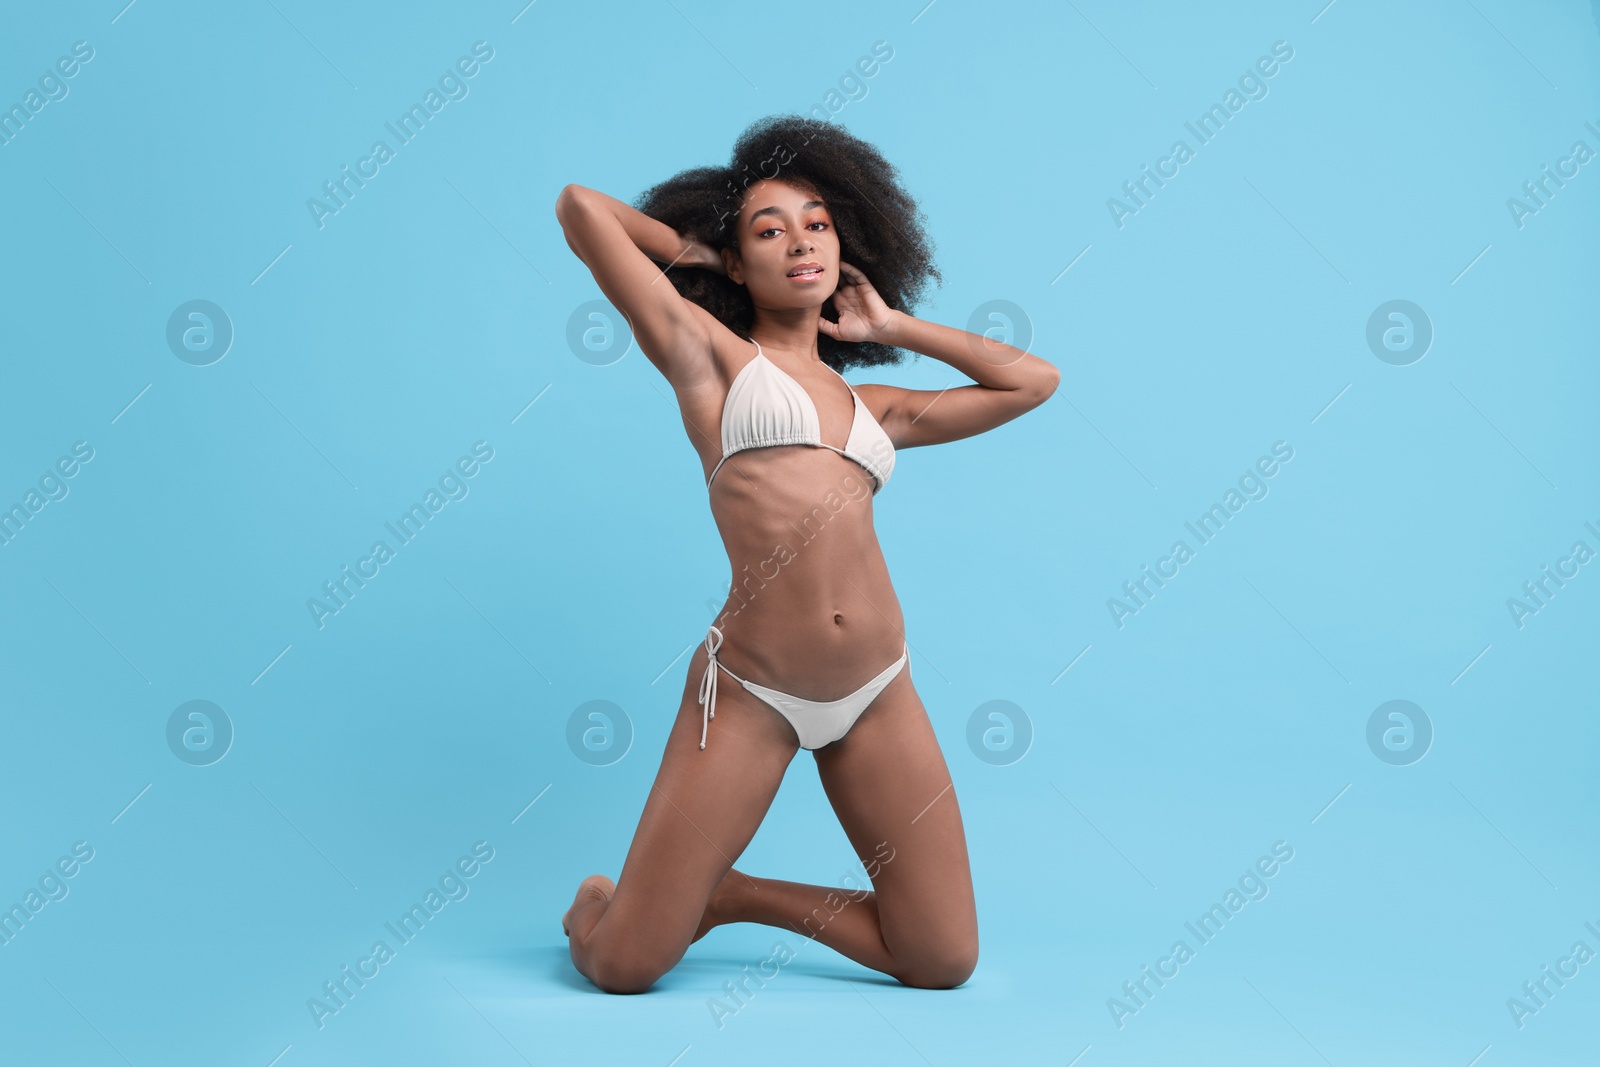 Photo of Beautiful woman in stylish bikini posing on light blue background